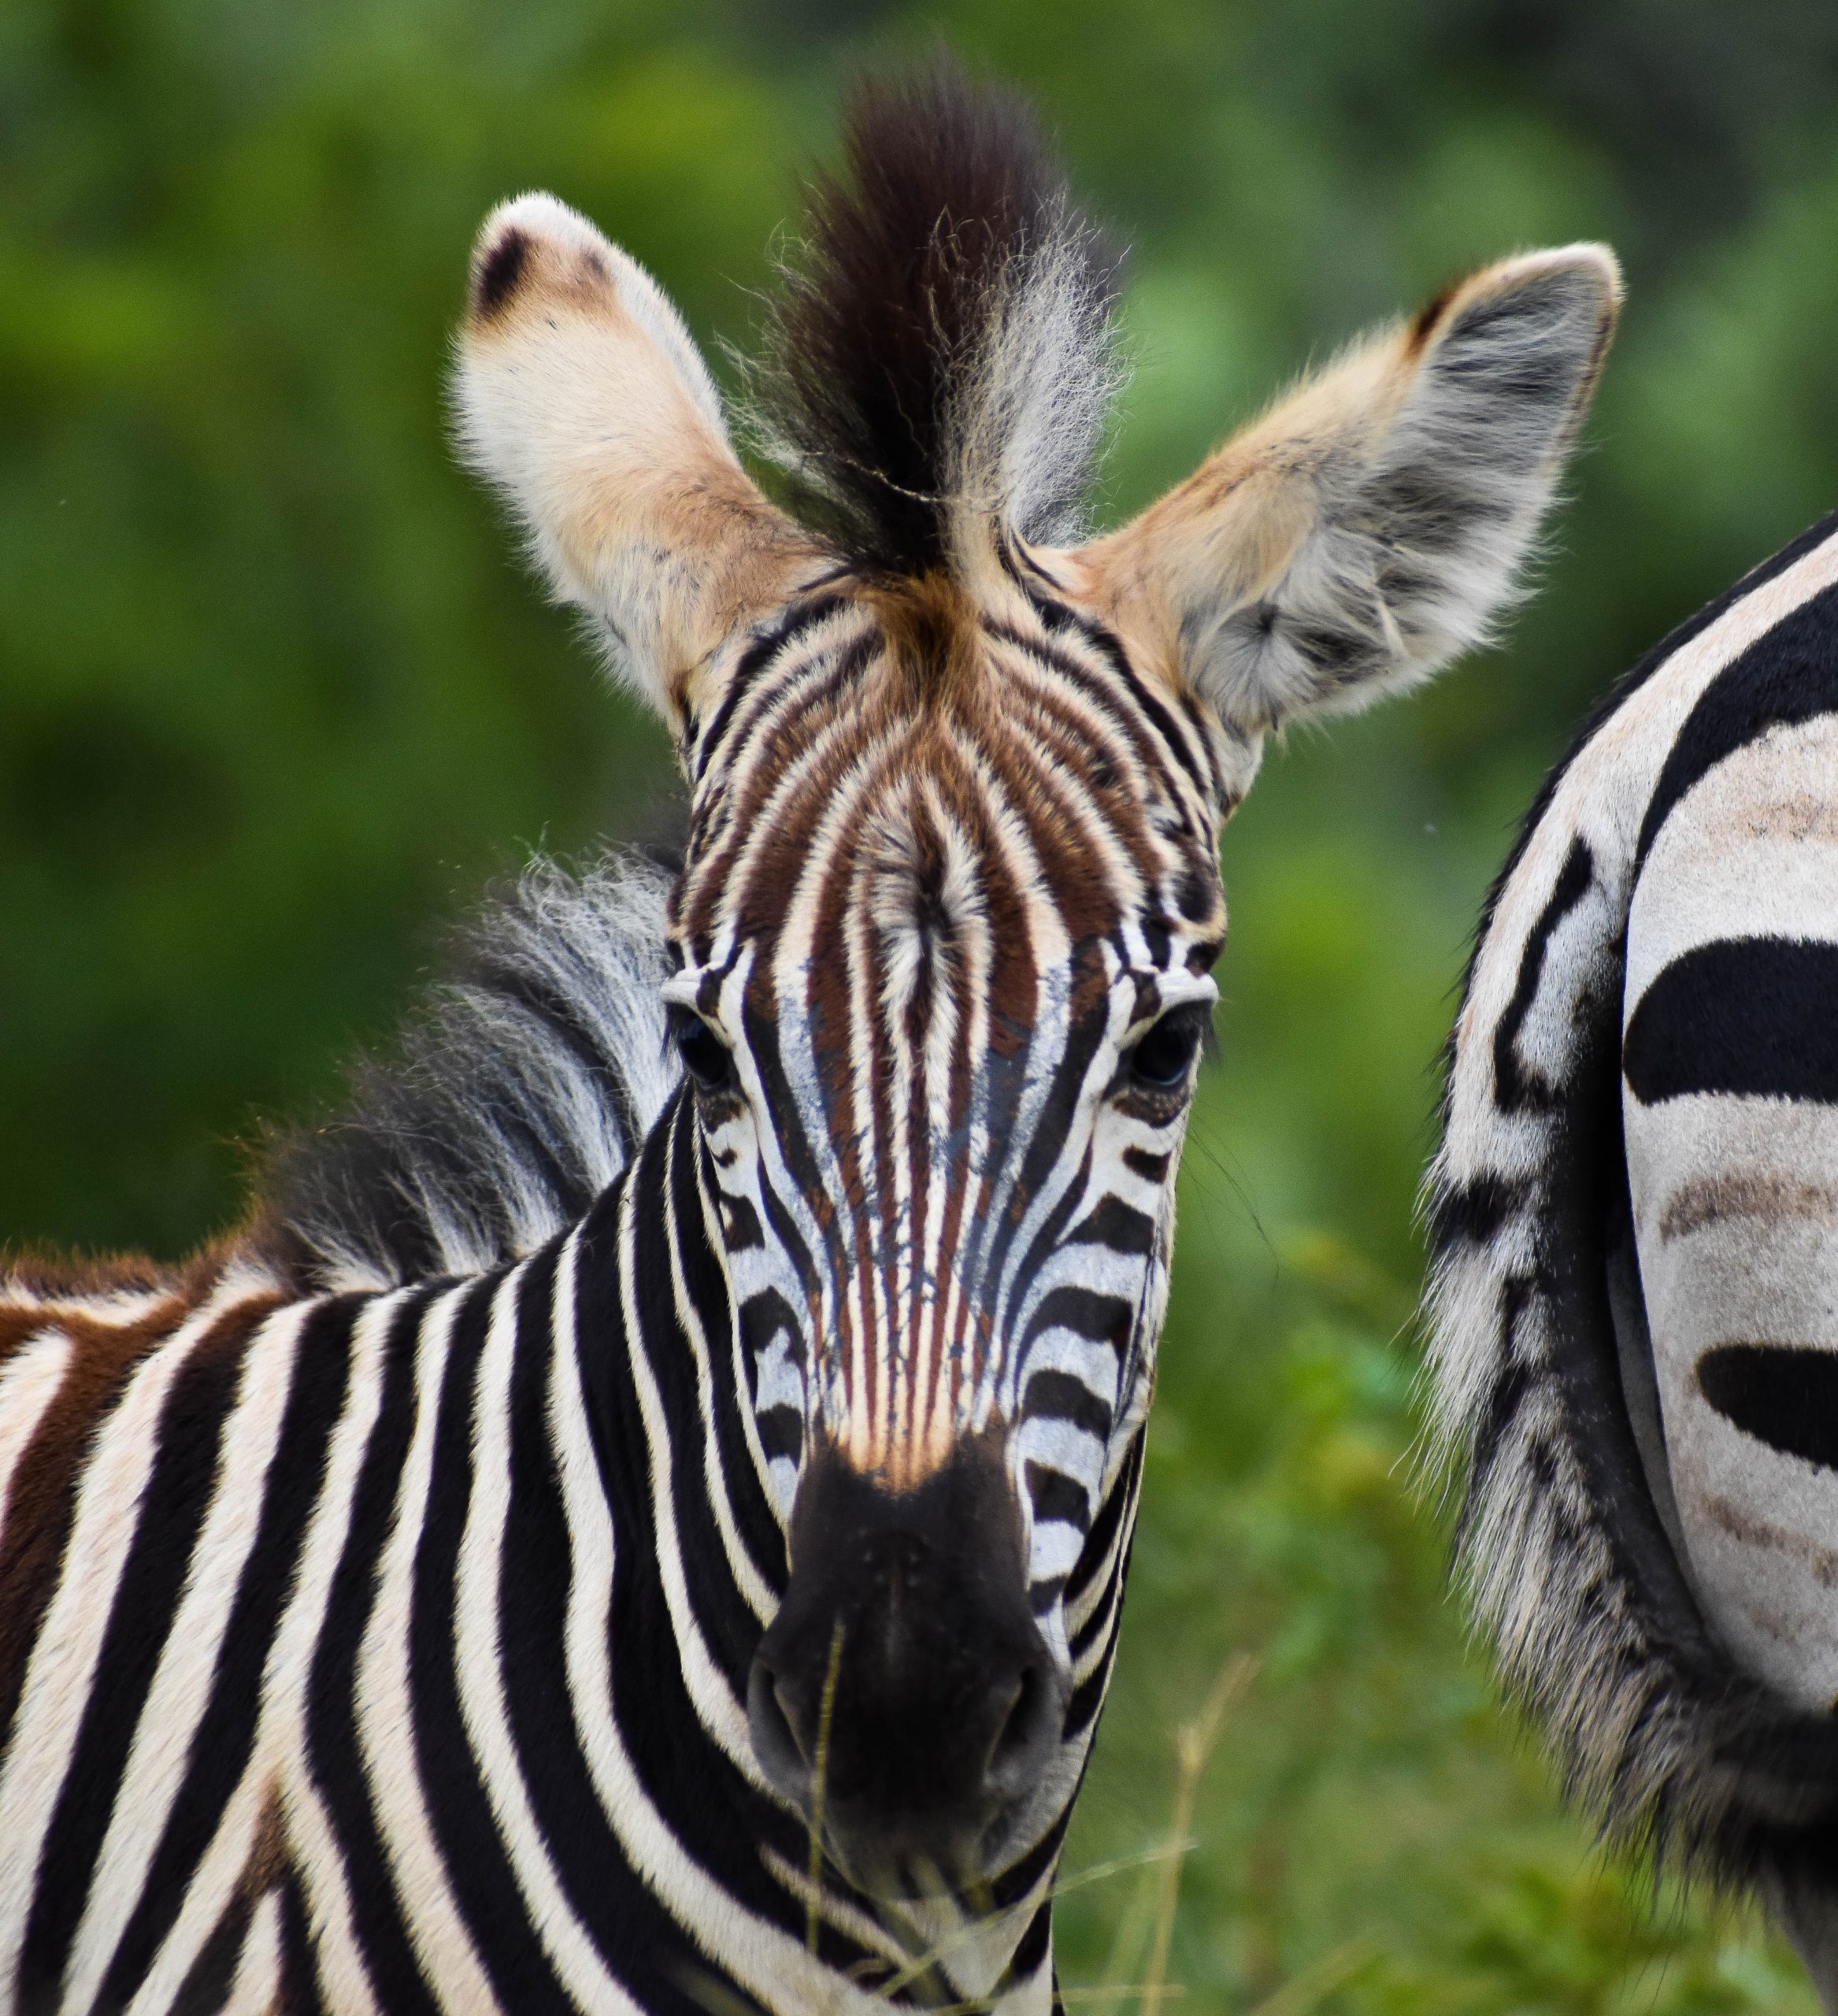 Up close picture of a zebra